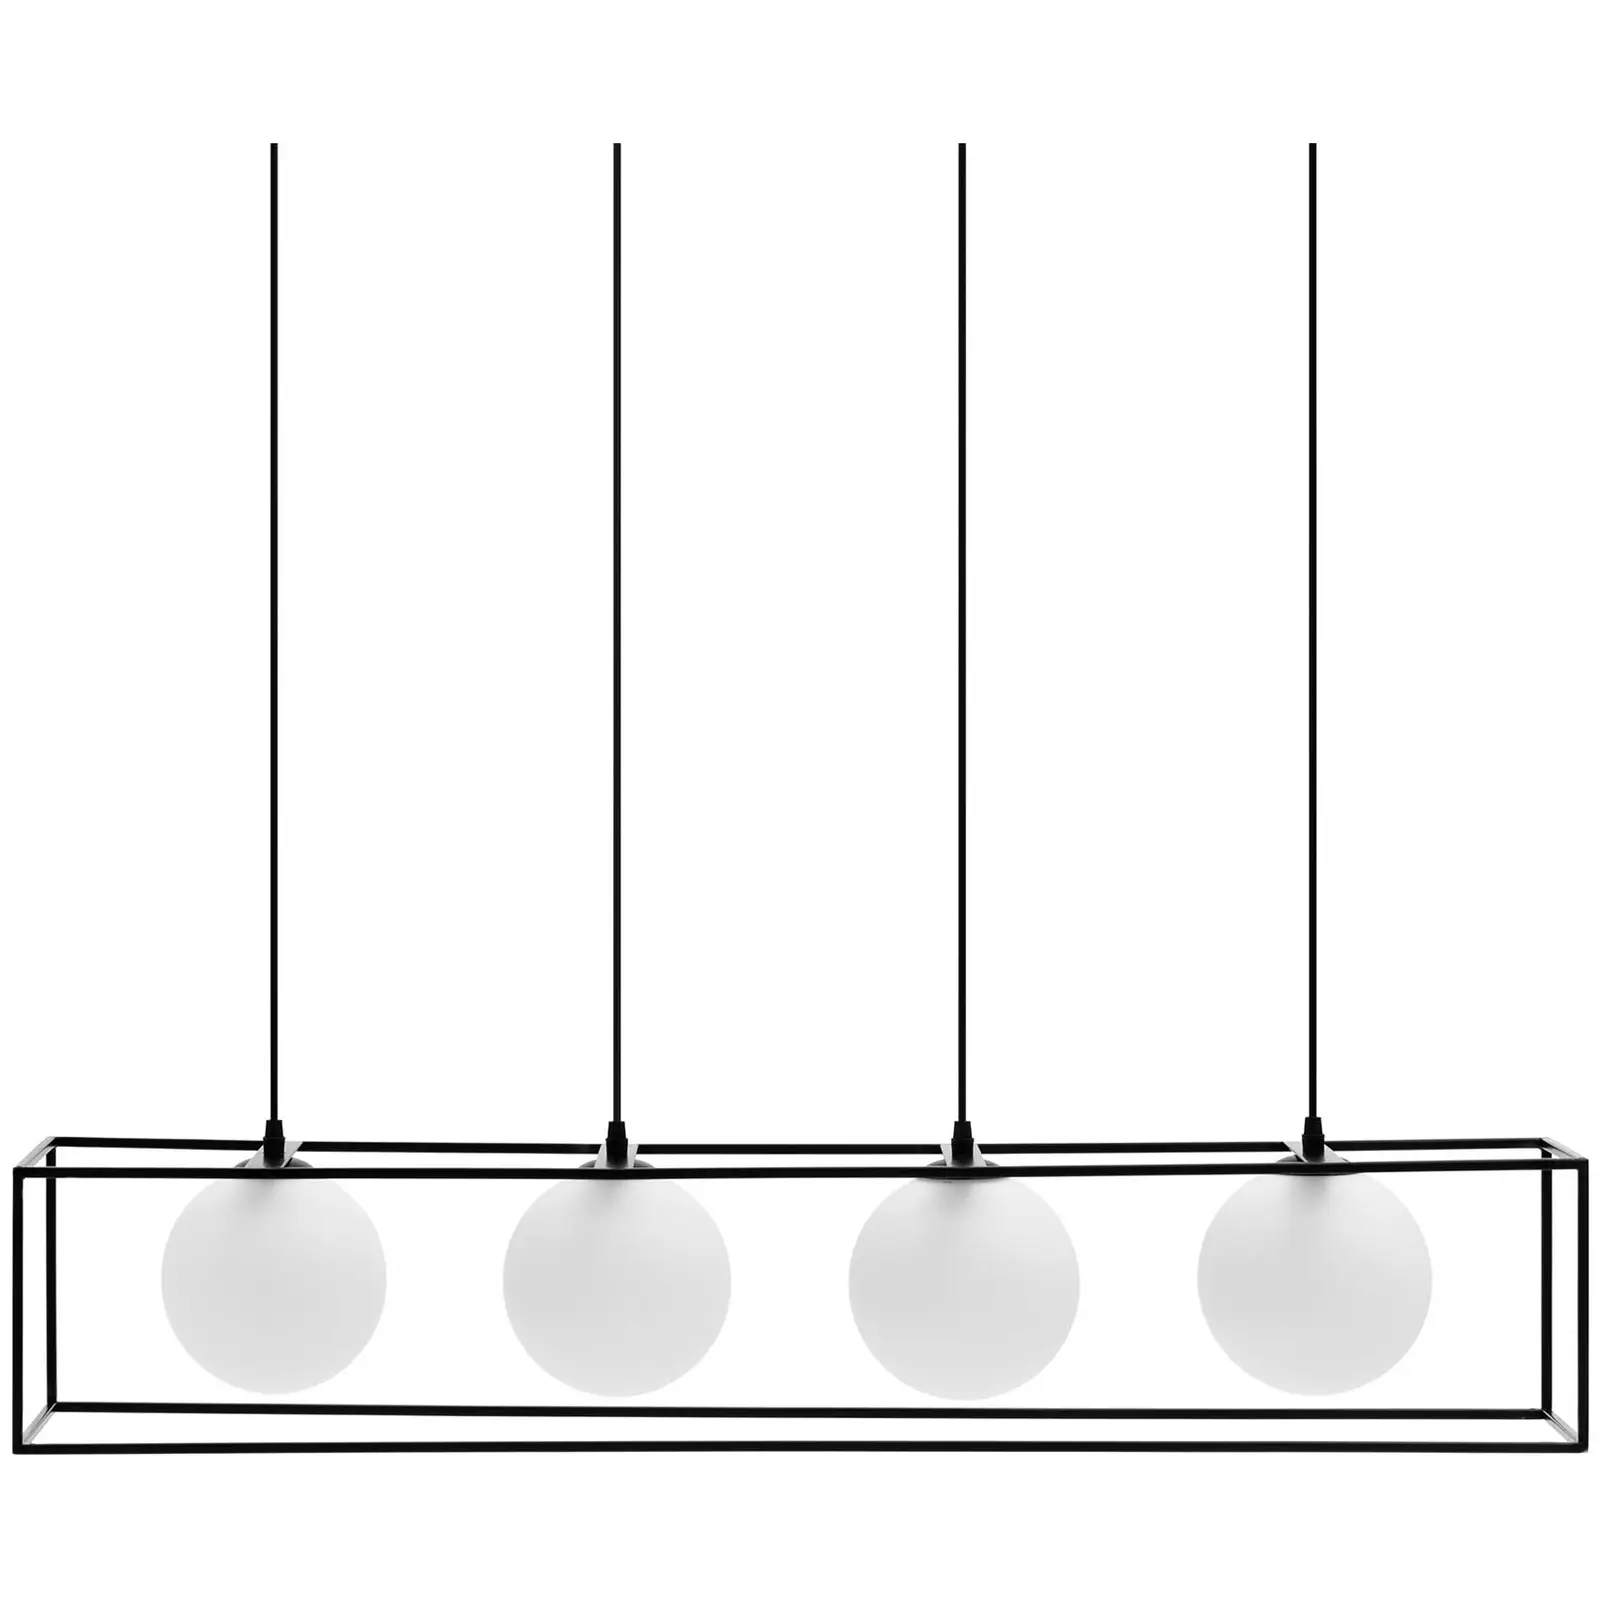 Pendelleuchte - 4 Leuchtmittel - Glaskugeln in Eisenrahmen